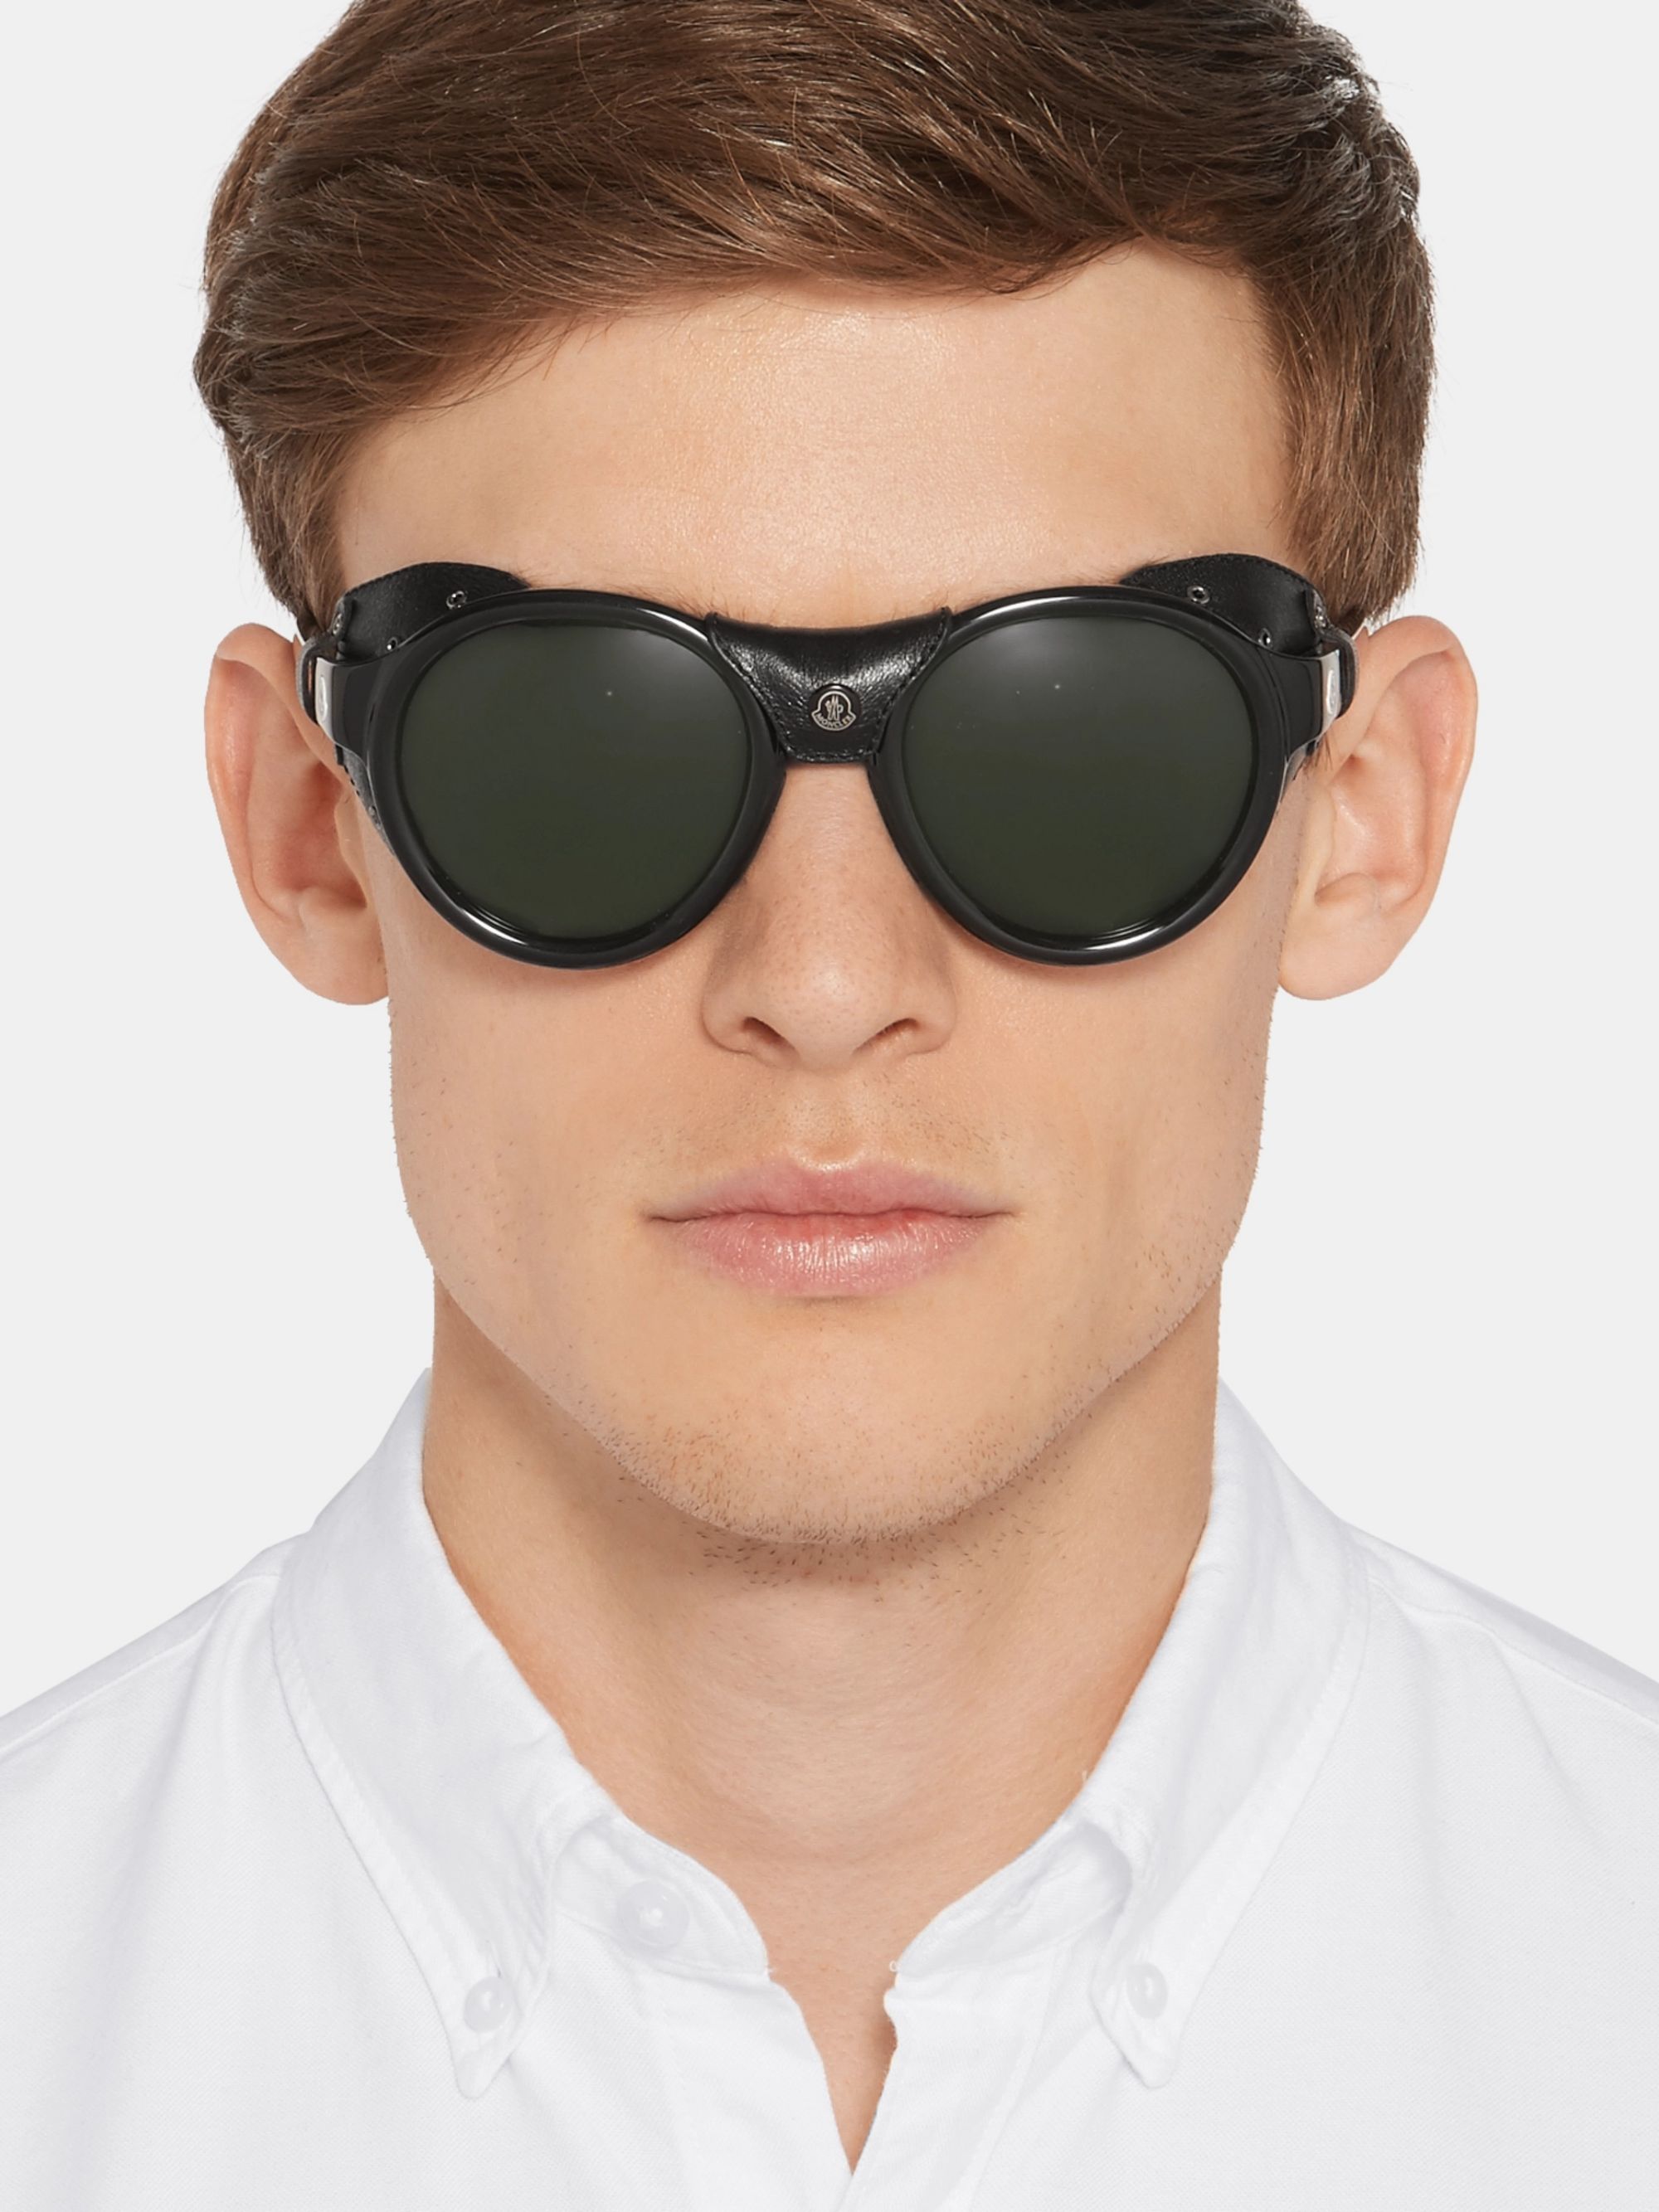 Формы солнцезащитных очков мужские. Очки солнцезащитные мужские. Солнечные очки для мужчин. Стильные мужские очки. Очки мужские солнцезащитные модные.